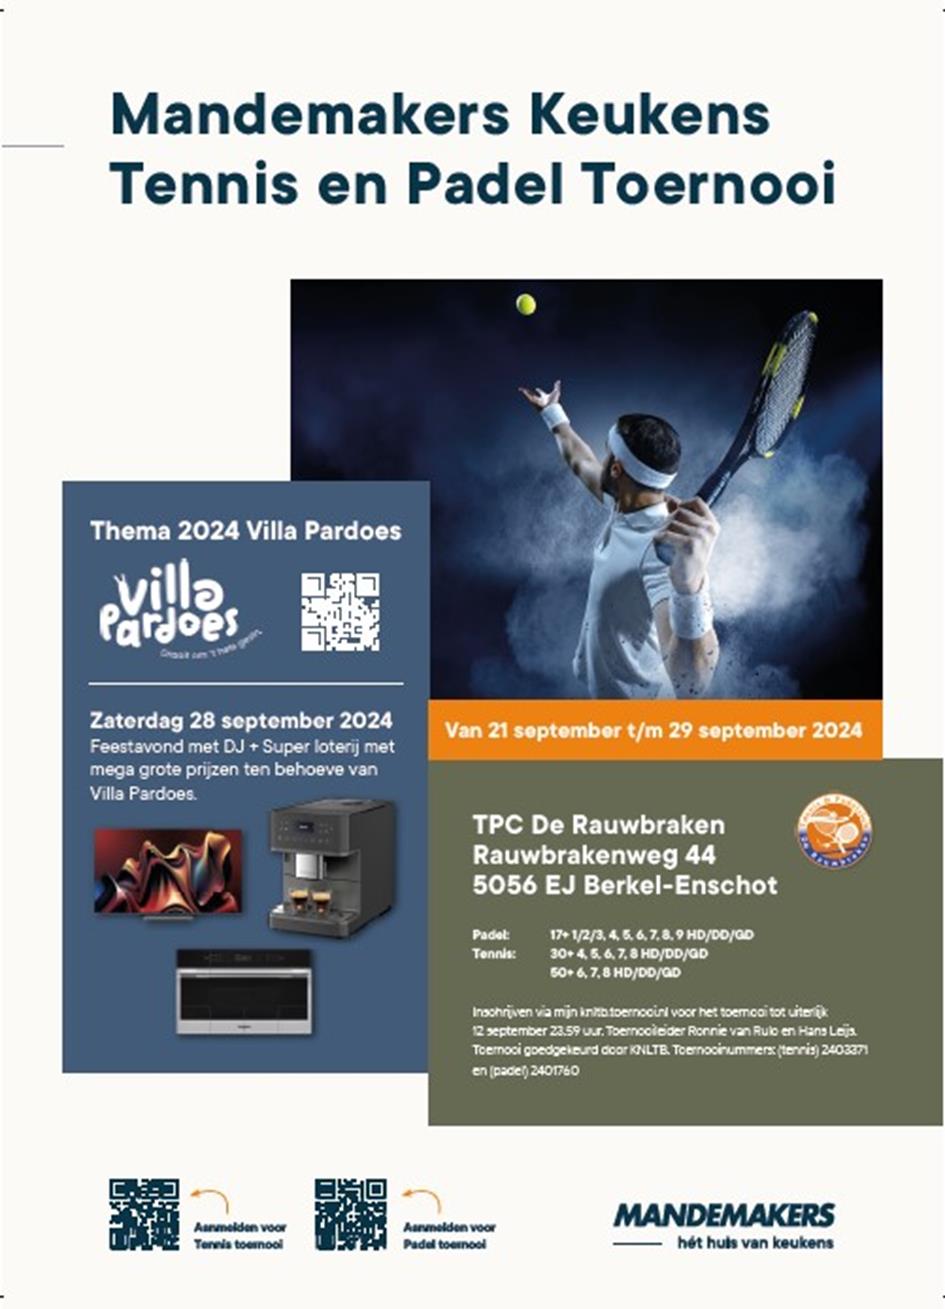 Mandemakers Keukens Open Tennis en Padel Toernooi 2024.jpg